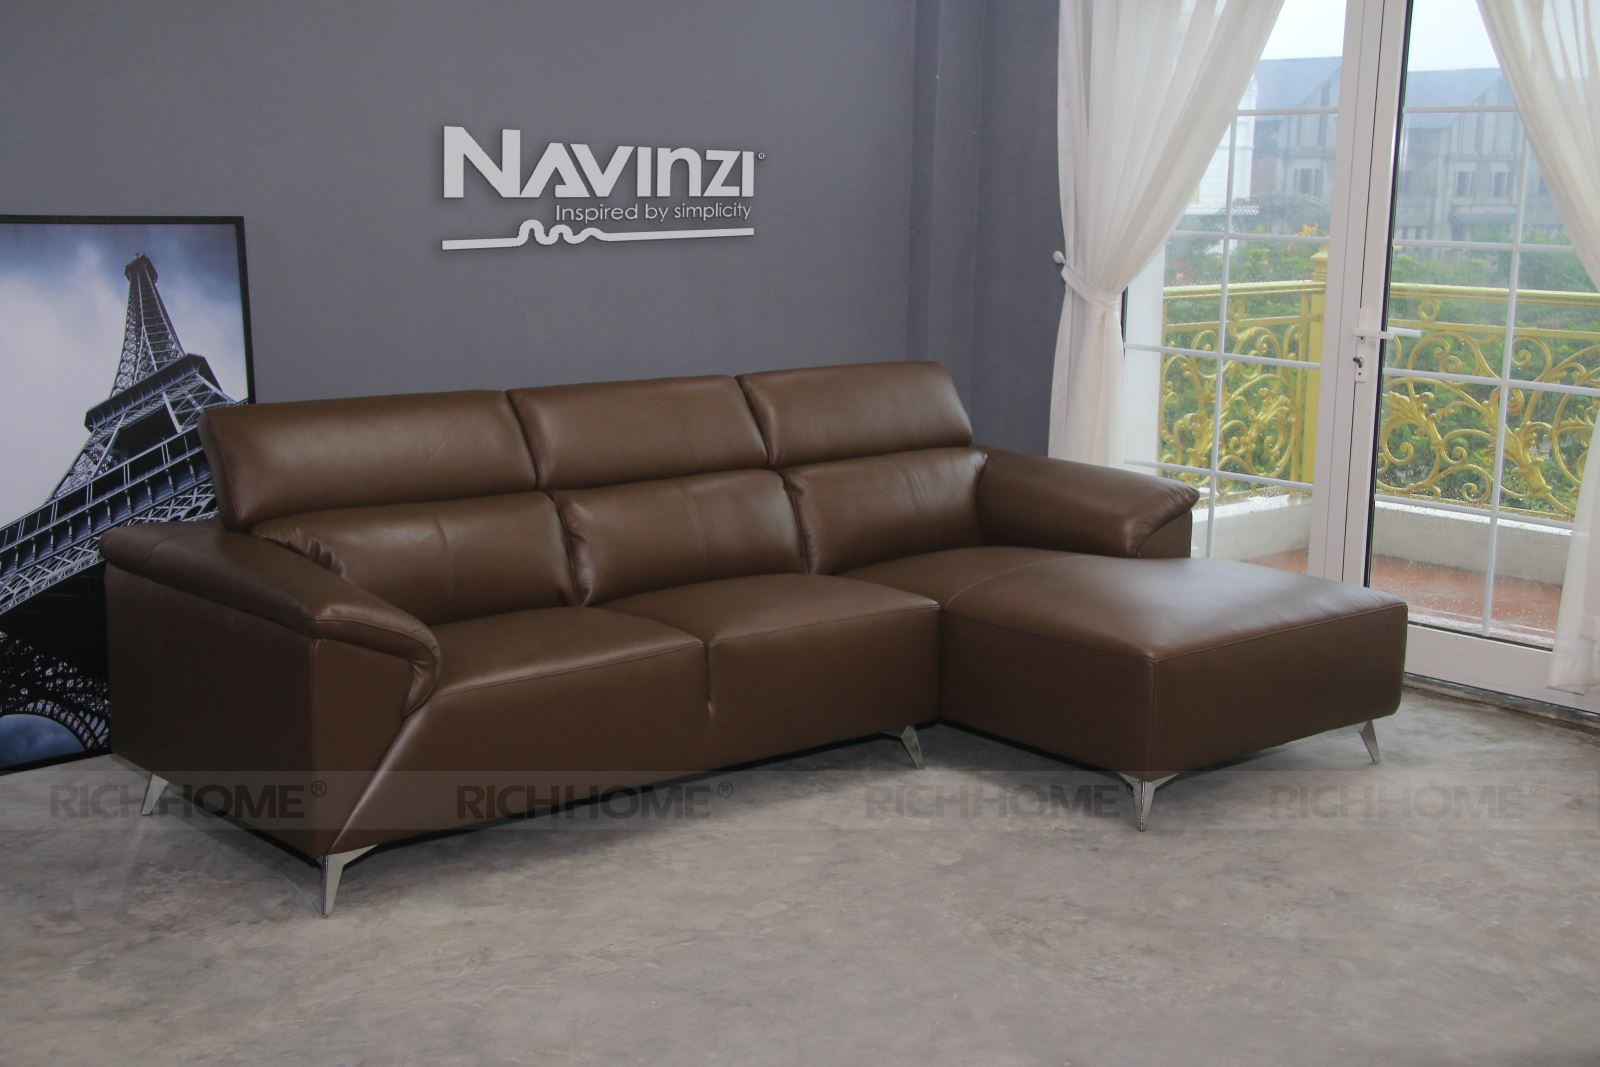 Sofa góc - lựa chọn tuyệt vời cho căn phòng nhỏ - Ảnh 3